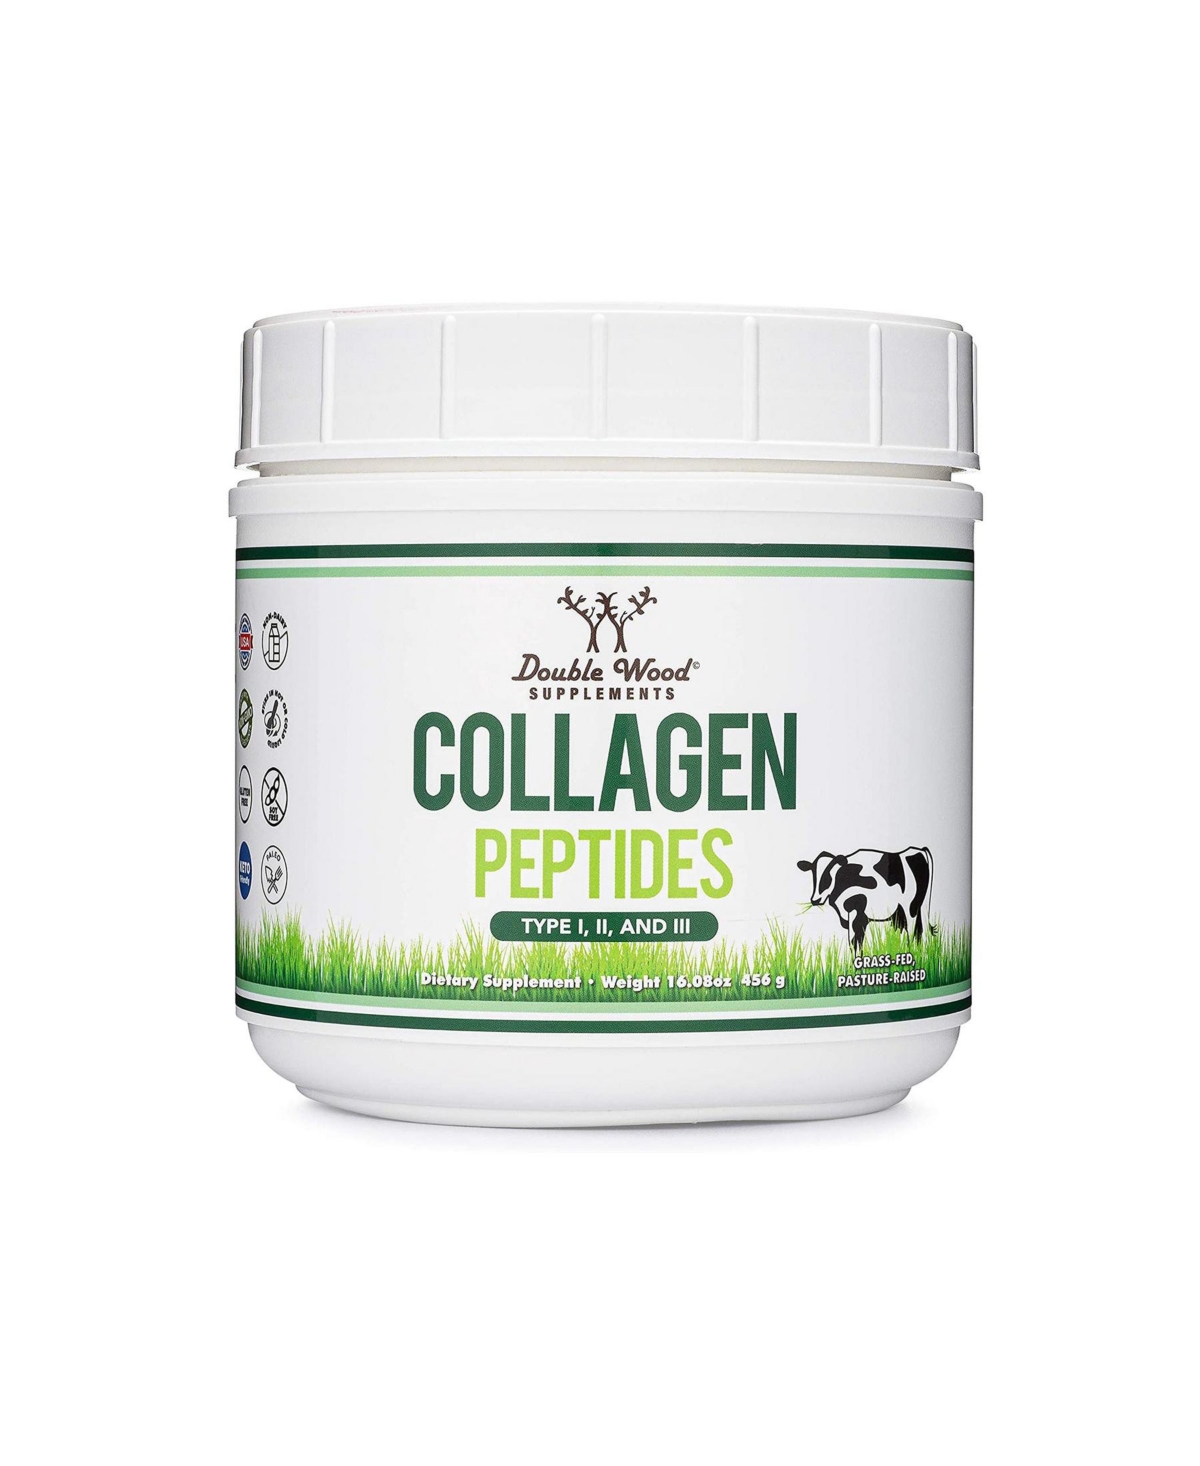 Collagen Peptides - 456 gram jar, 38 servings